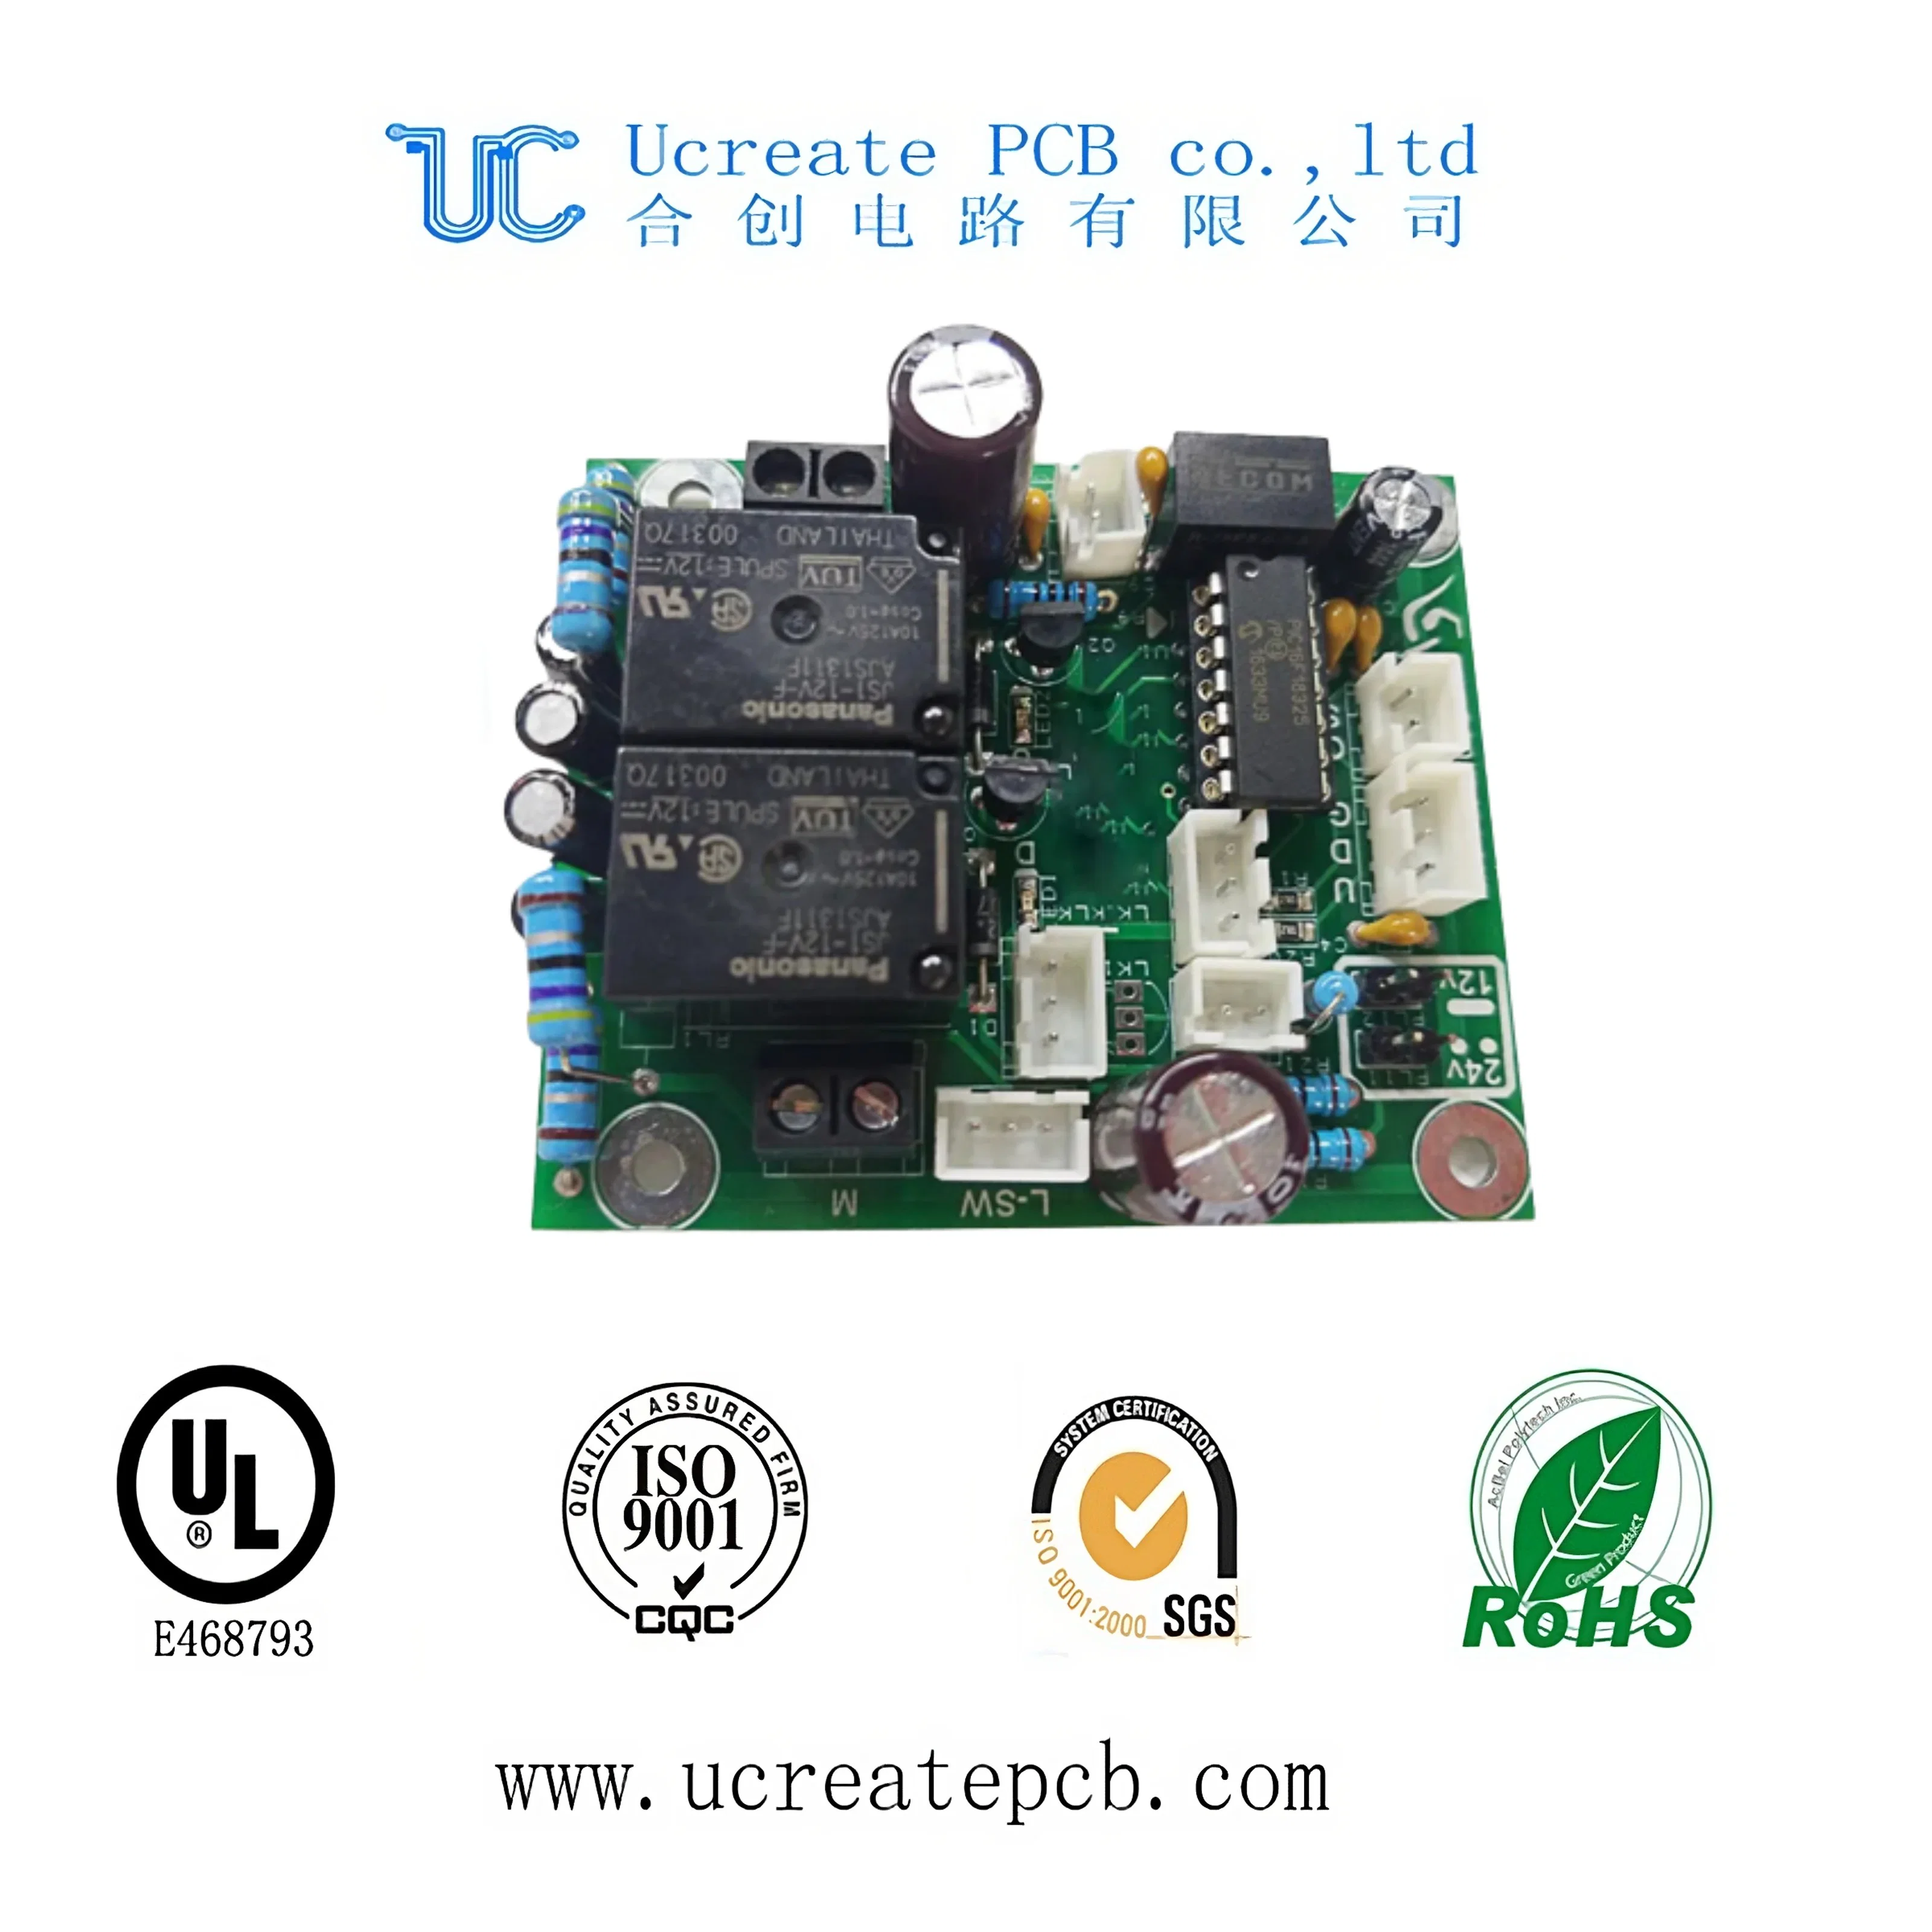 Haute qualité Circuit imprimé flexible rigide PCB Board Rigid-Flex PCB pour l'électronique.